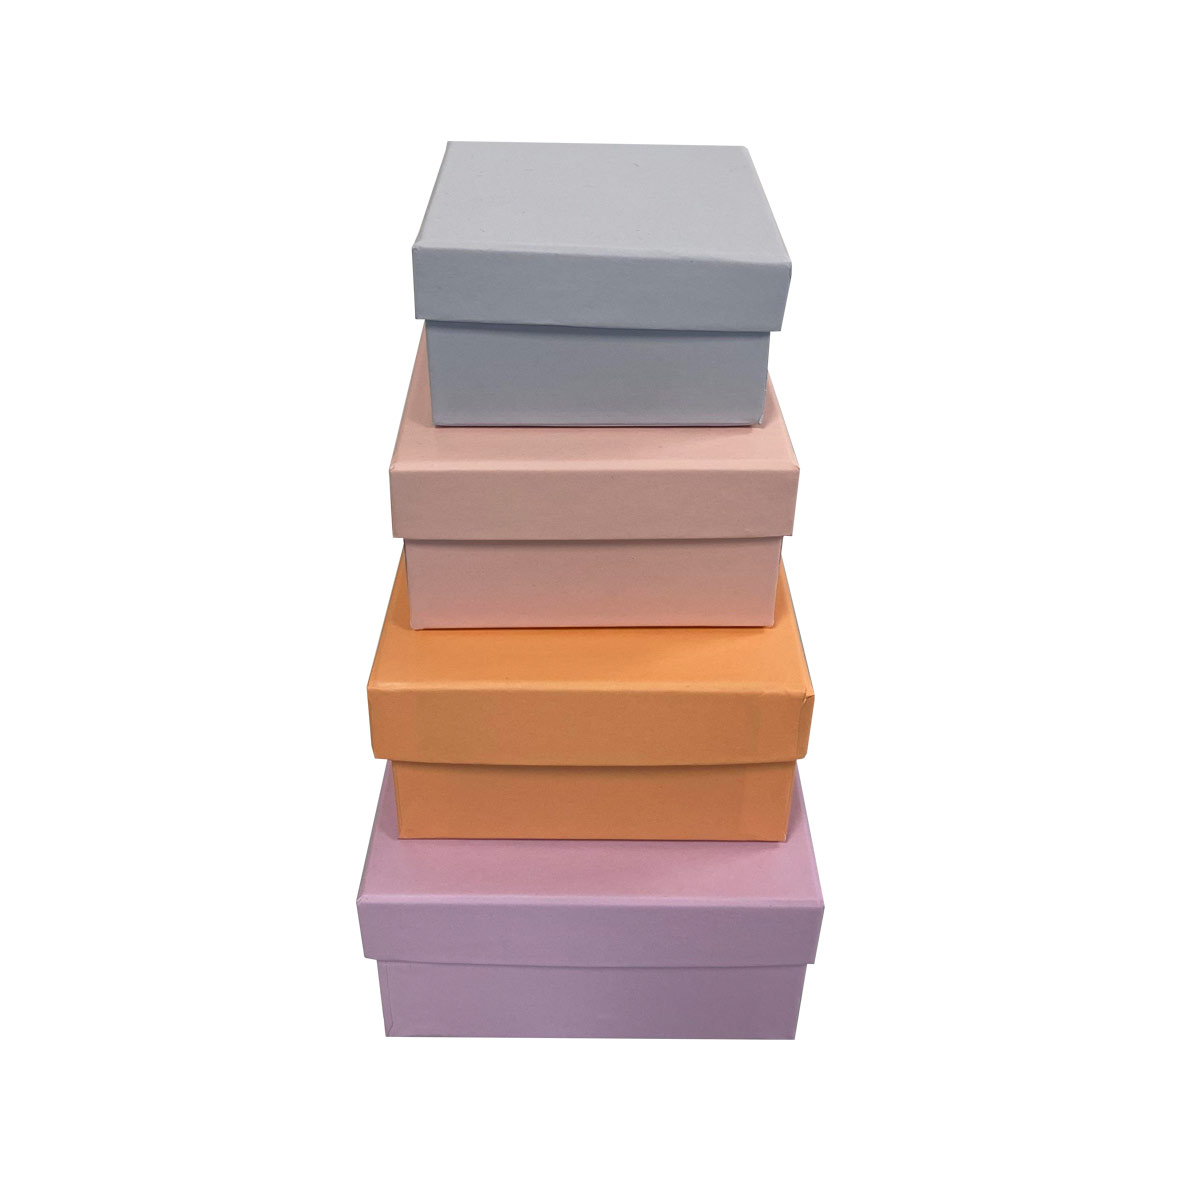 Boîte carton couvercle cloche couleur pastel par lot de 4 (mauve, abricot, rose, bleu)